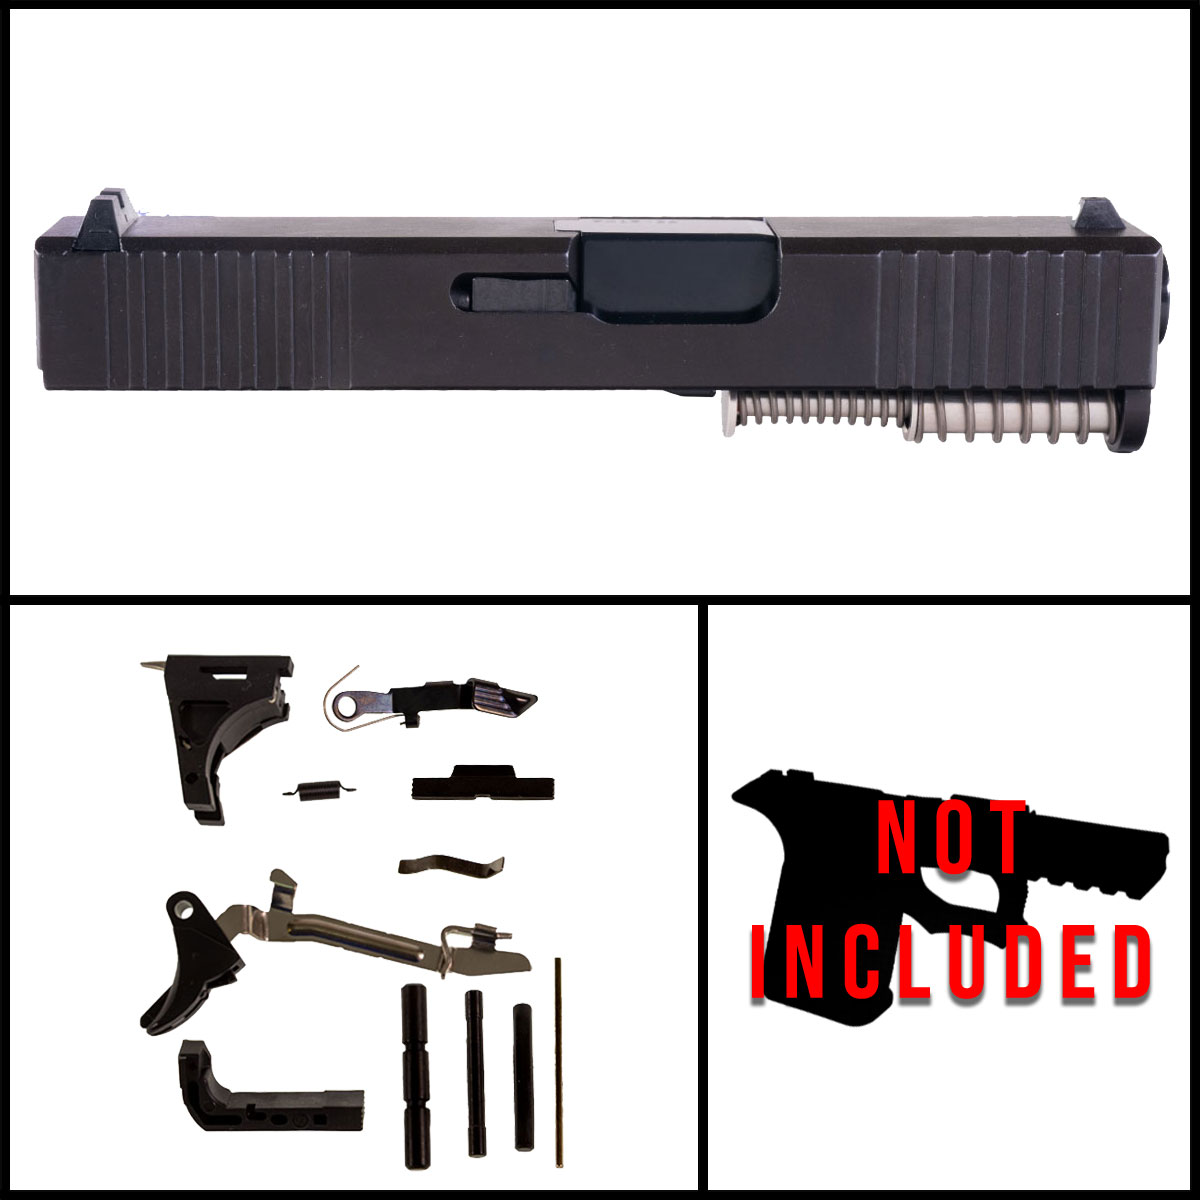 DTT 'Burly' 9mm Full Pistol Build Kit (Everything Minus Frame) - Glock 26 Gen 1-2 Compatible